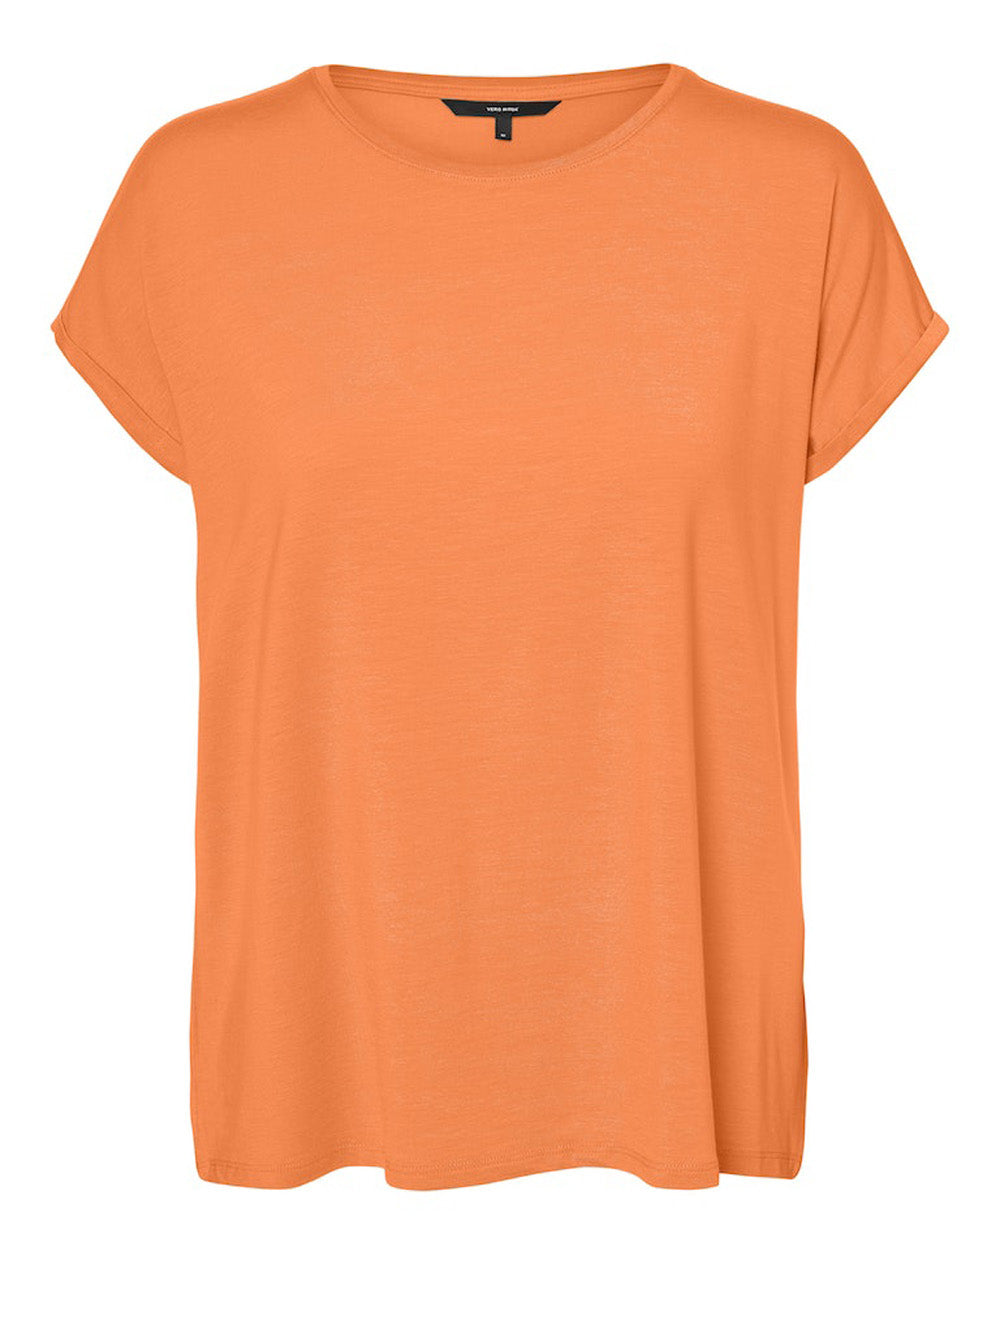 VERO MODA T-shirt Donna - Arancione modello 10284468